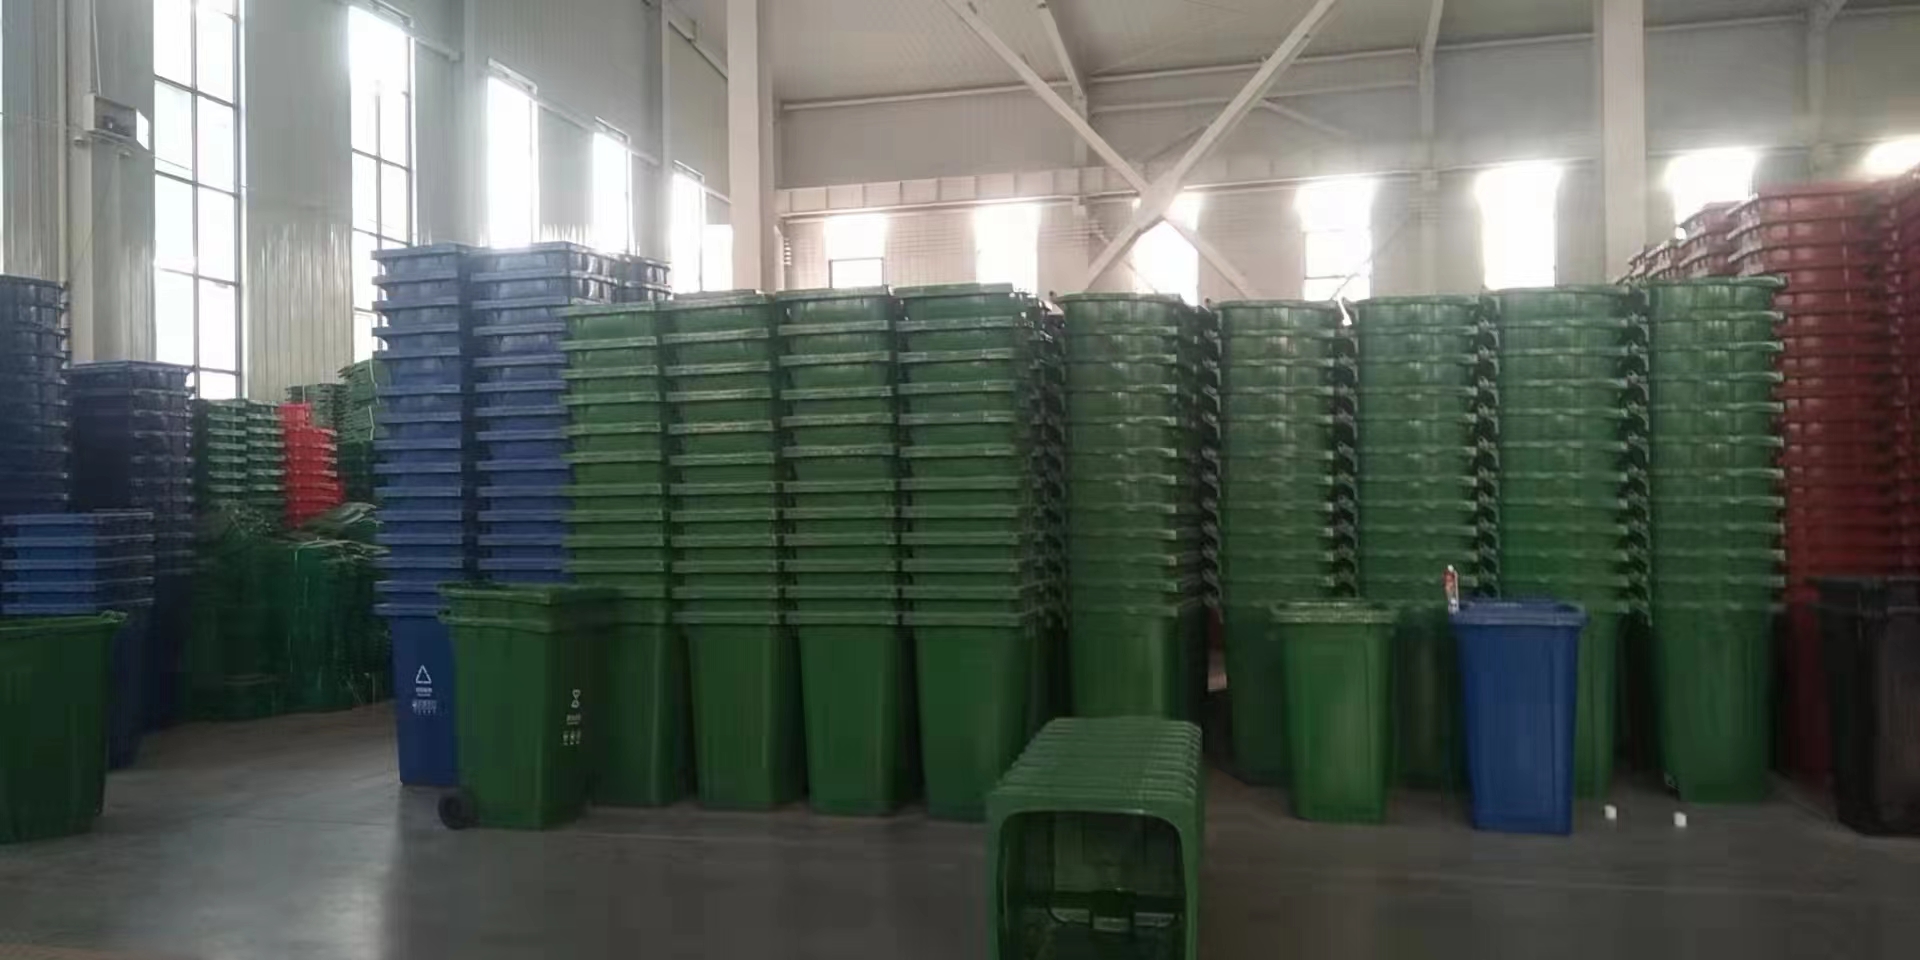 北京环卫垃圾桶密封不漏水垃圾桶公园  塑料垃圾桶